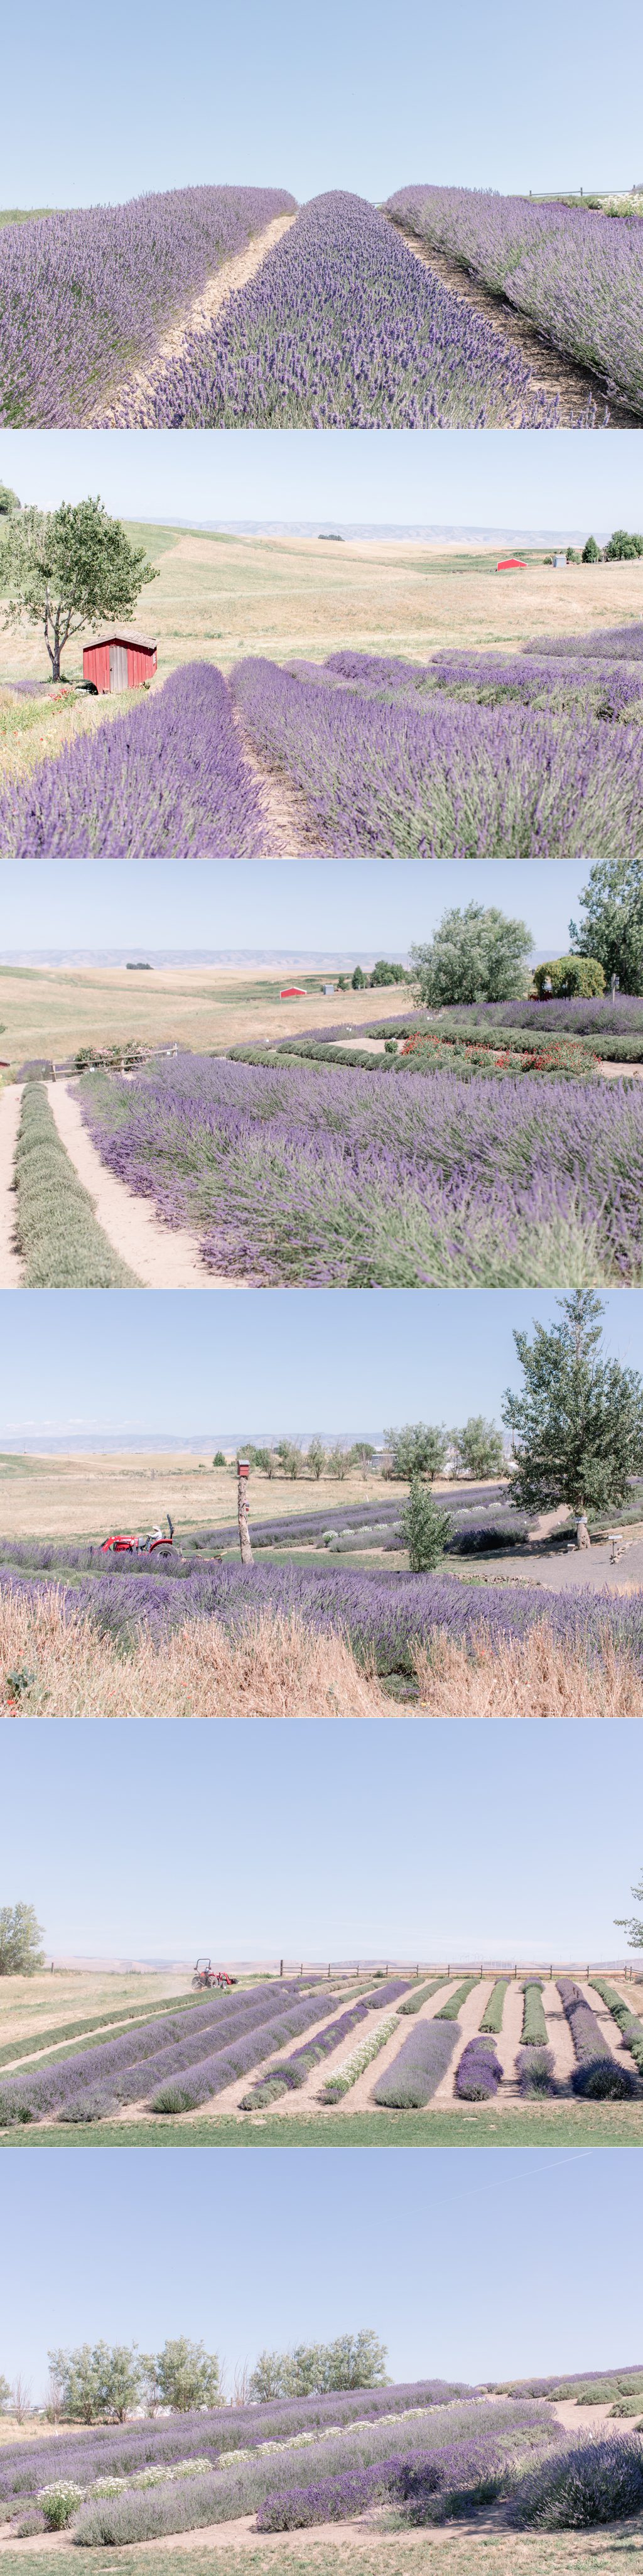 Lavender fields in Walla Walla Valley.